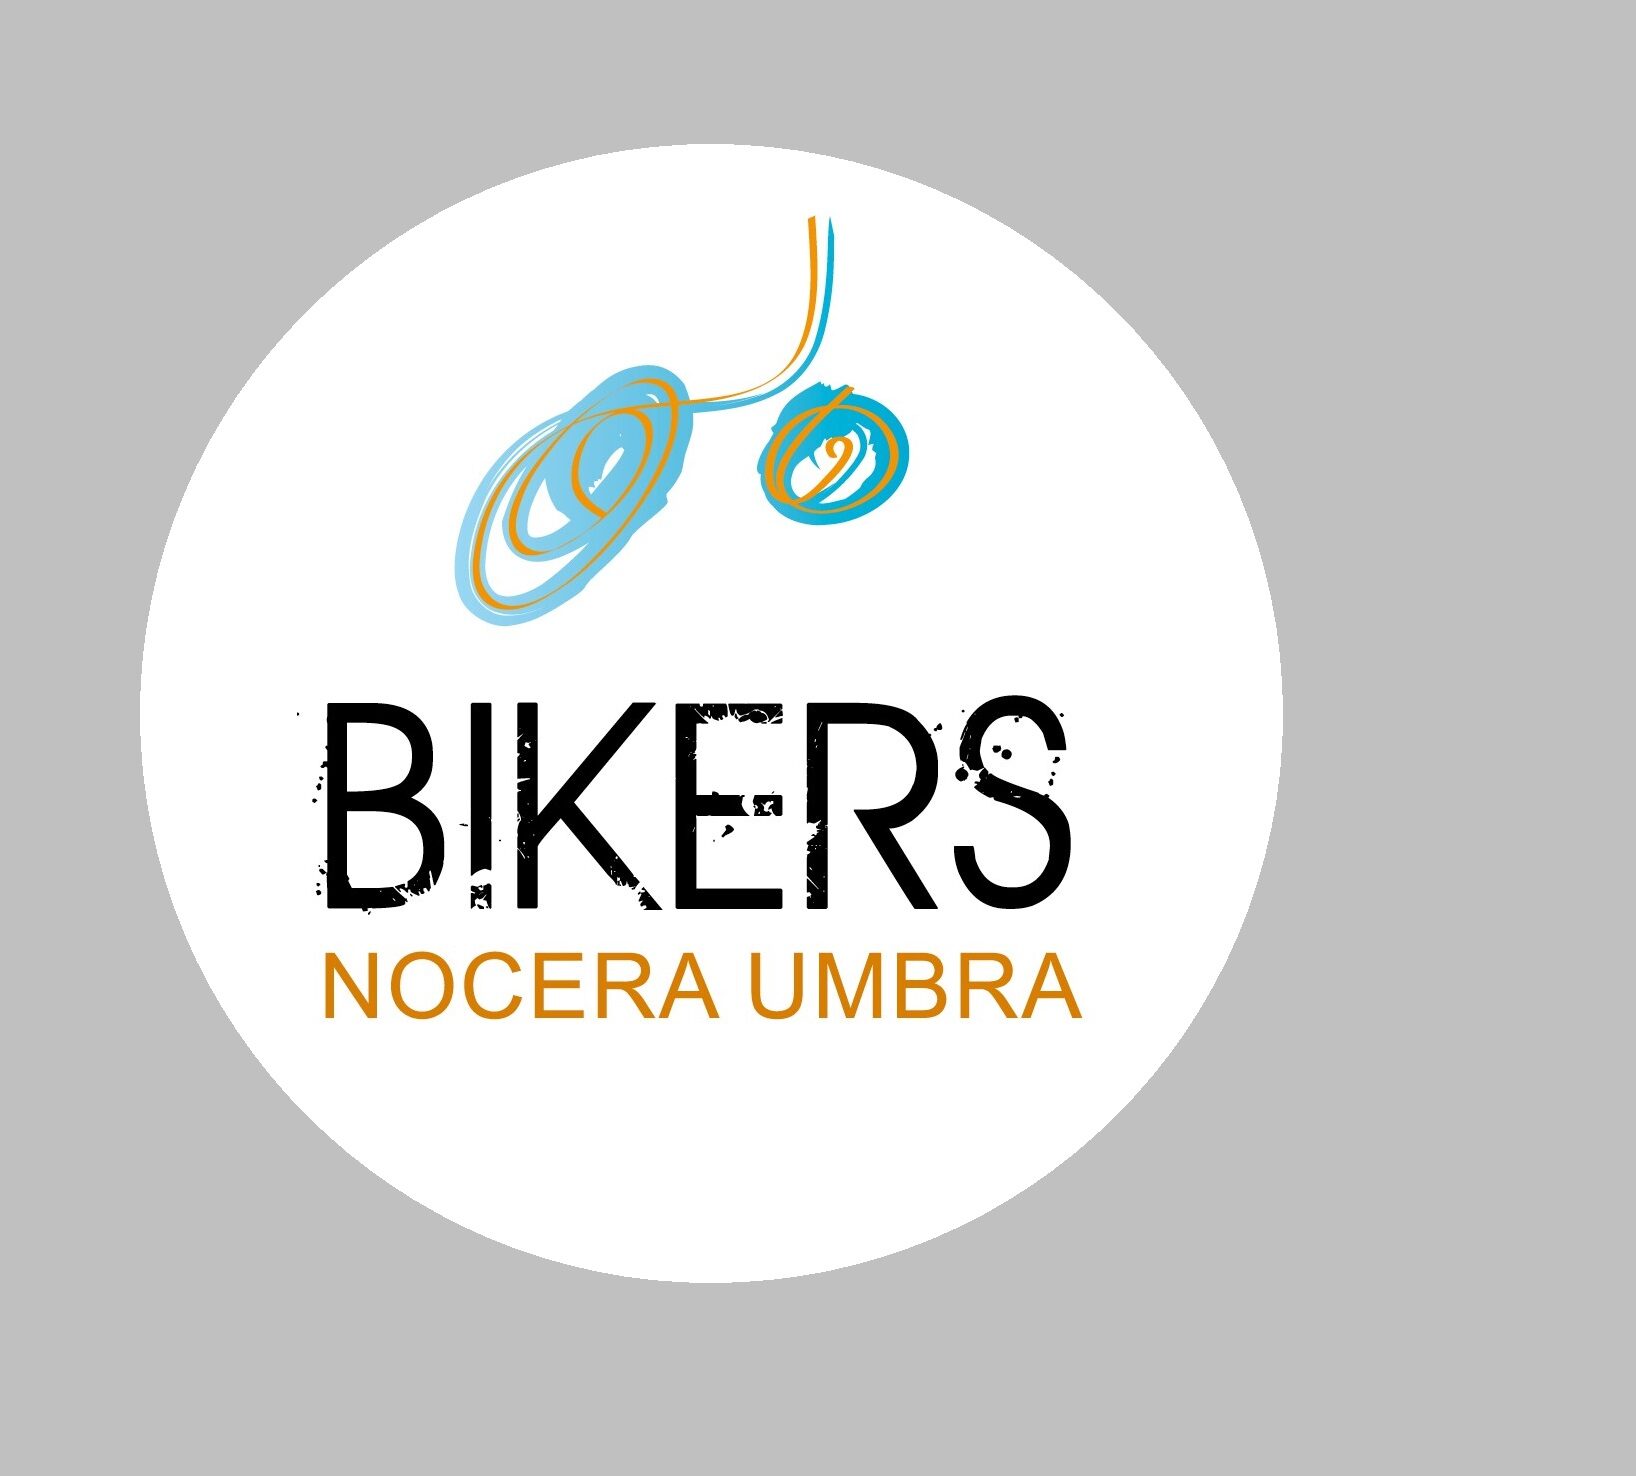 Bikers Nocera Umbra